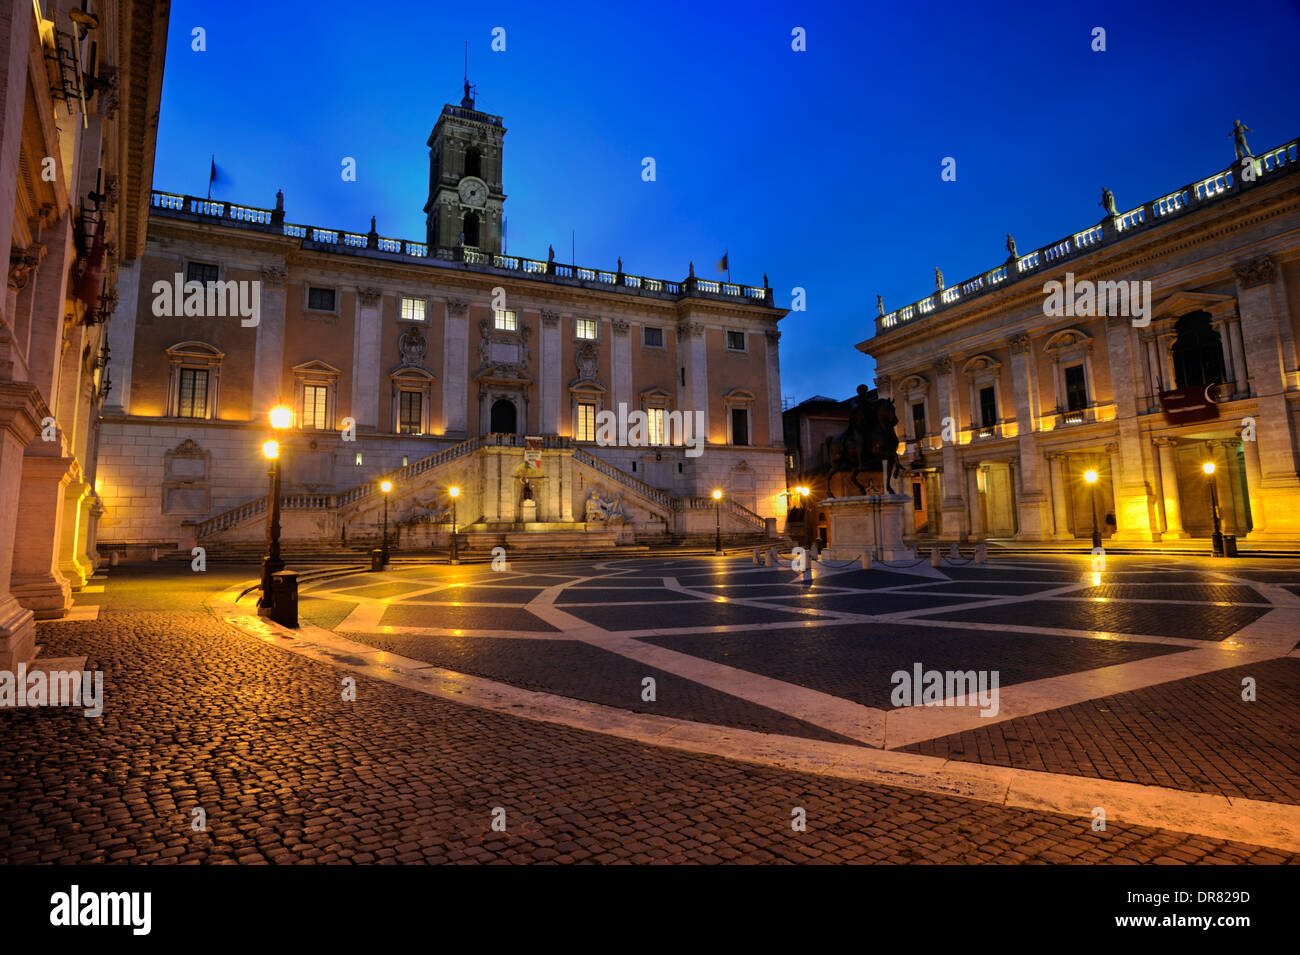 Italy, Rome, Piazza del Campidoglio at dawn Stock Photo